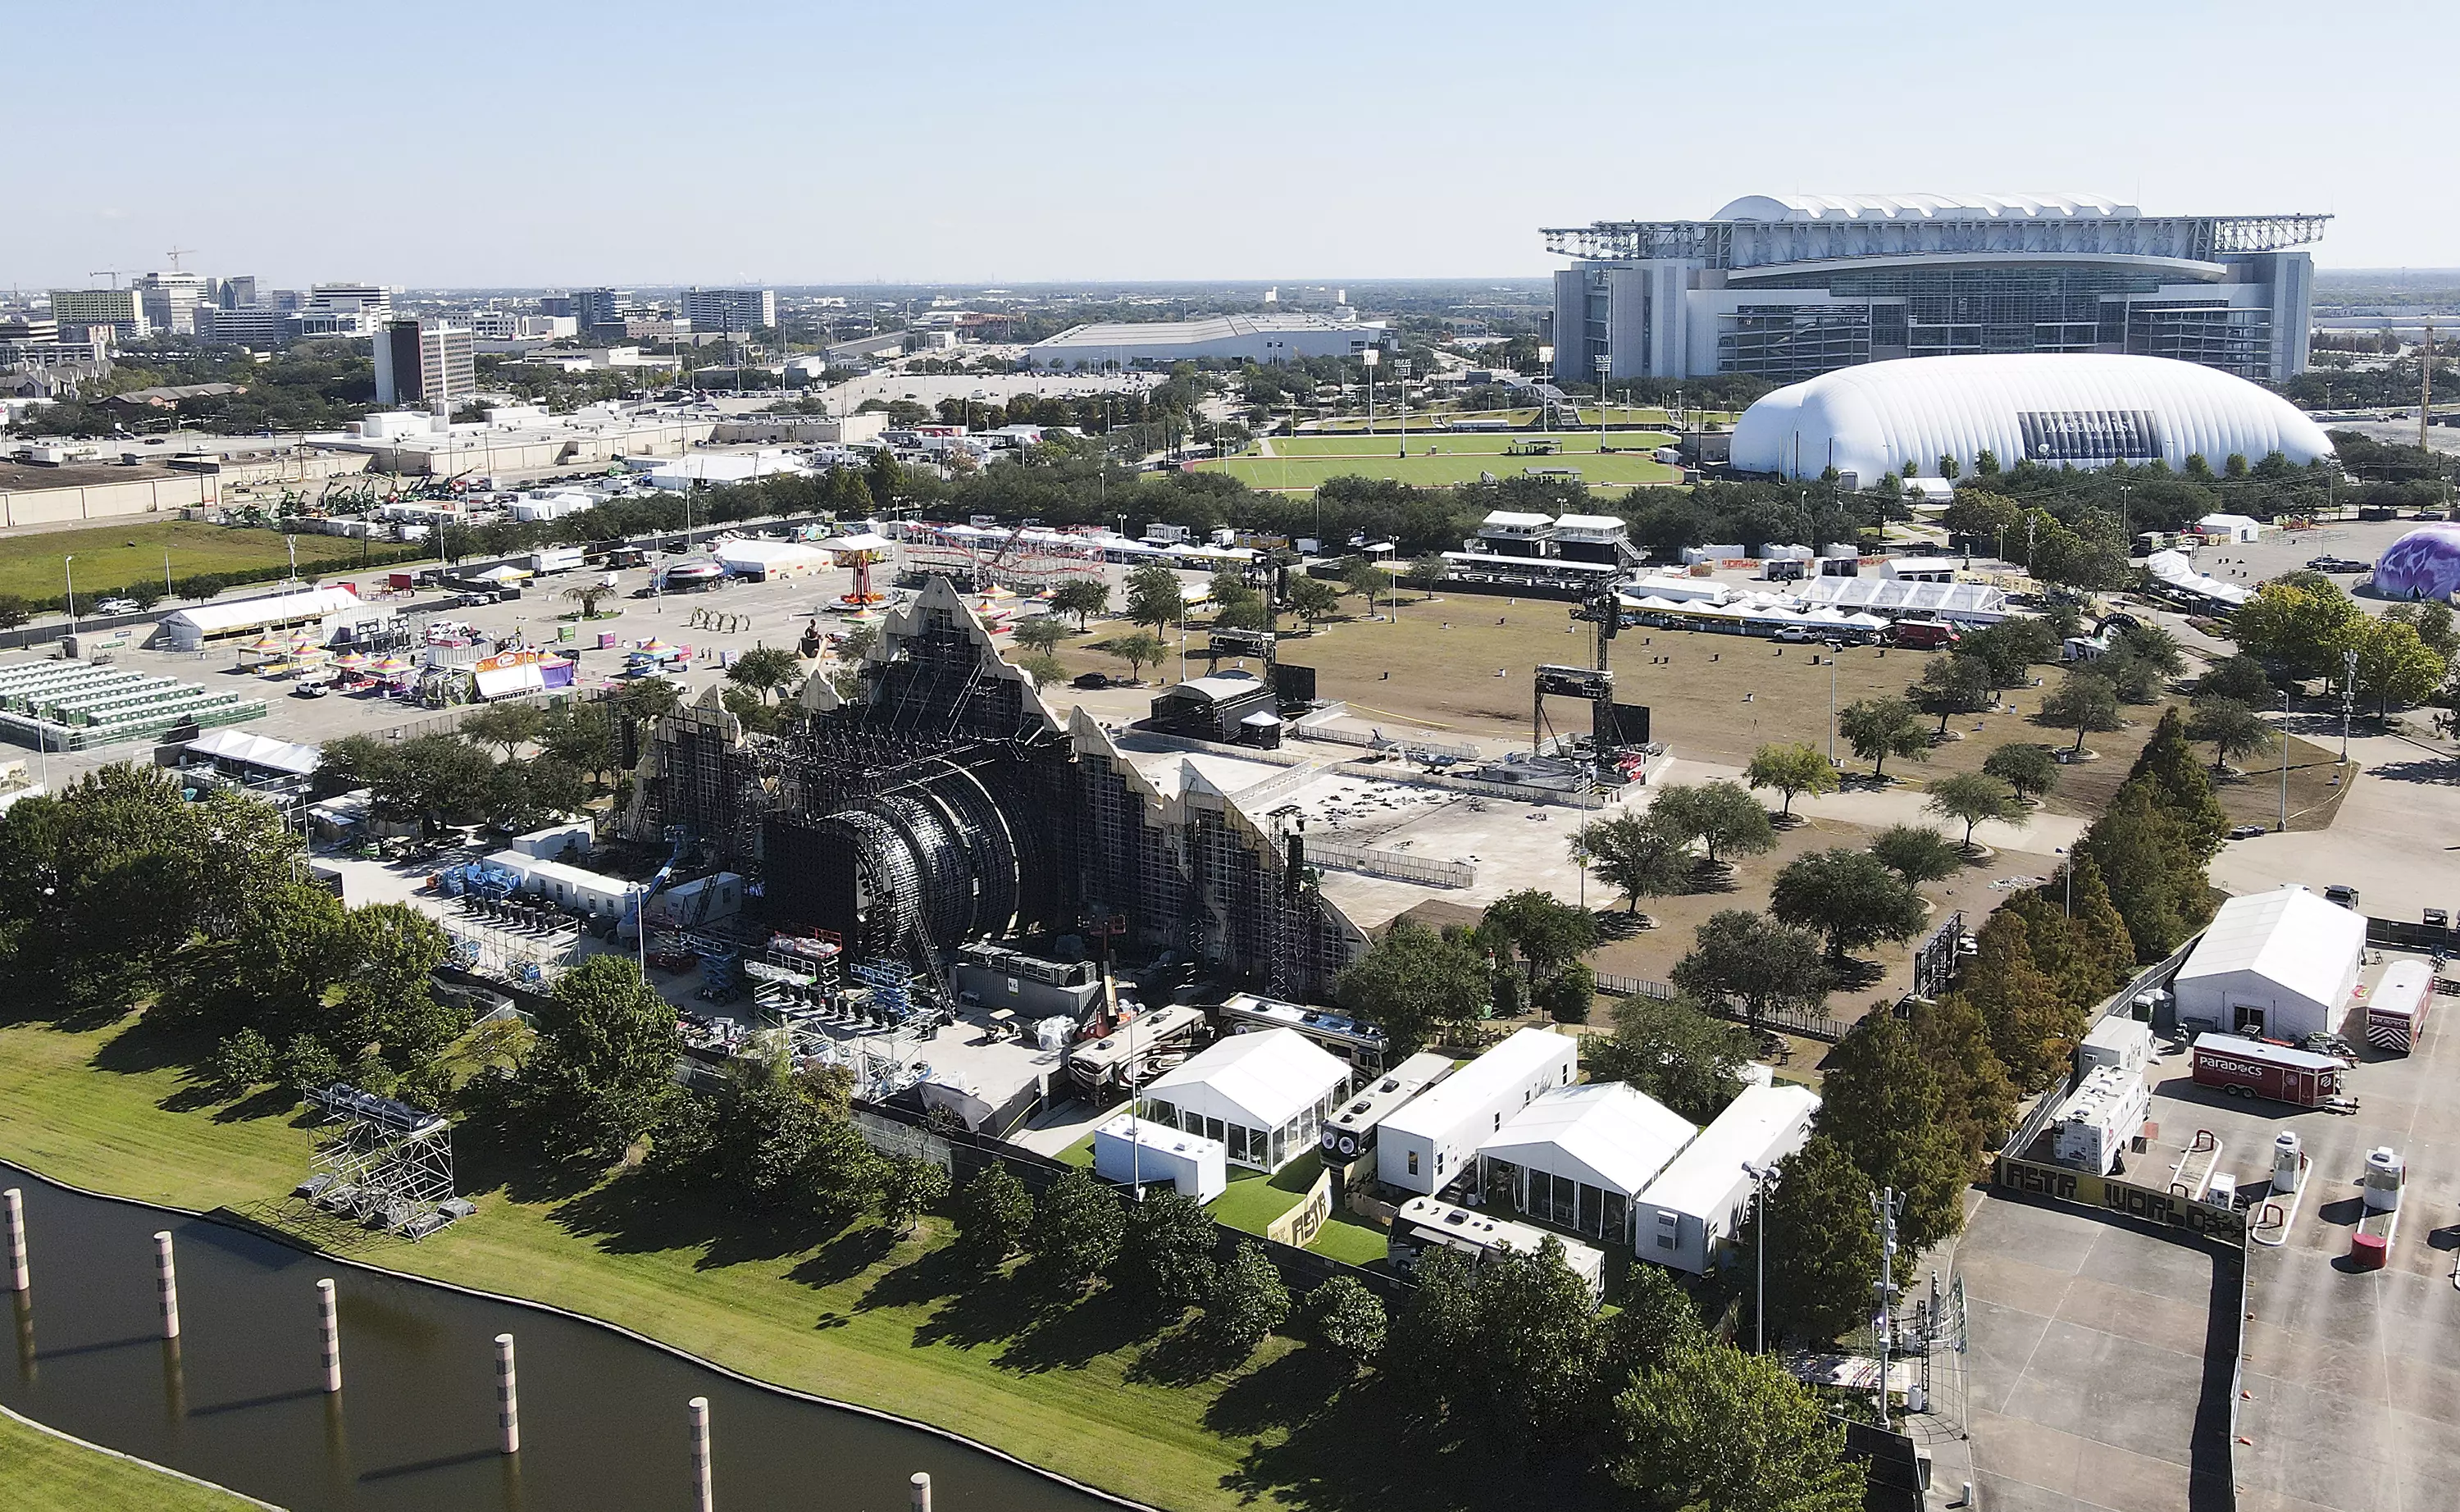 The festival set-up at NRG Park in Houston.